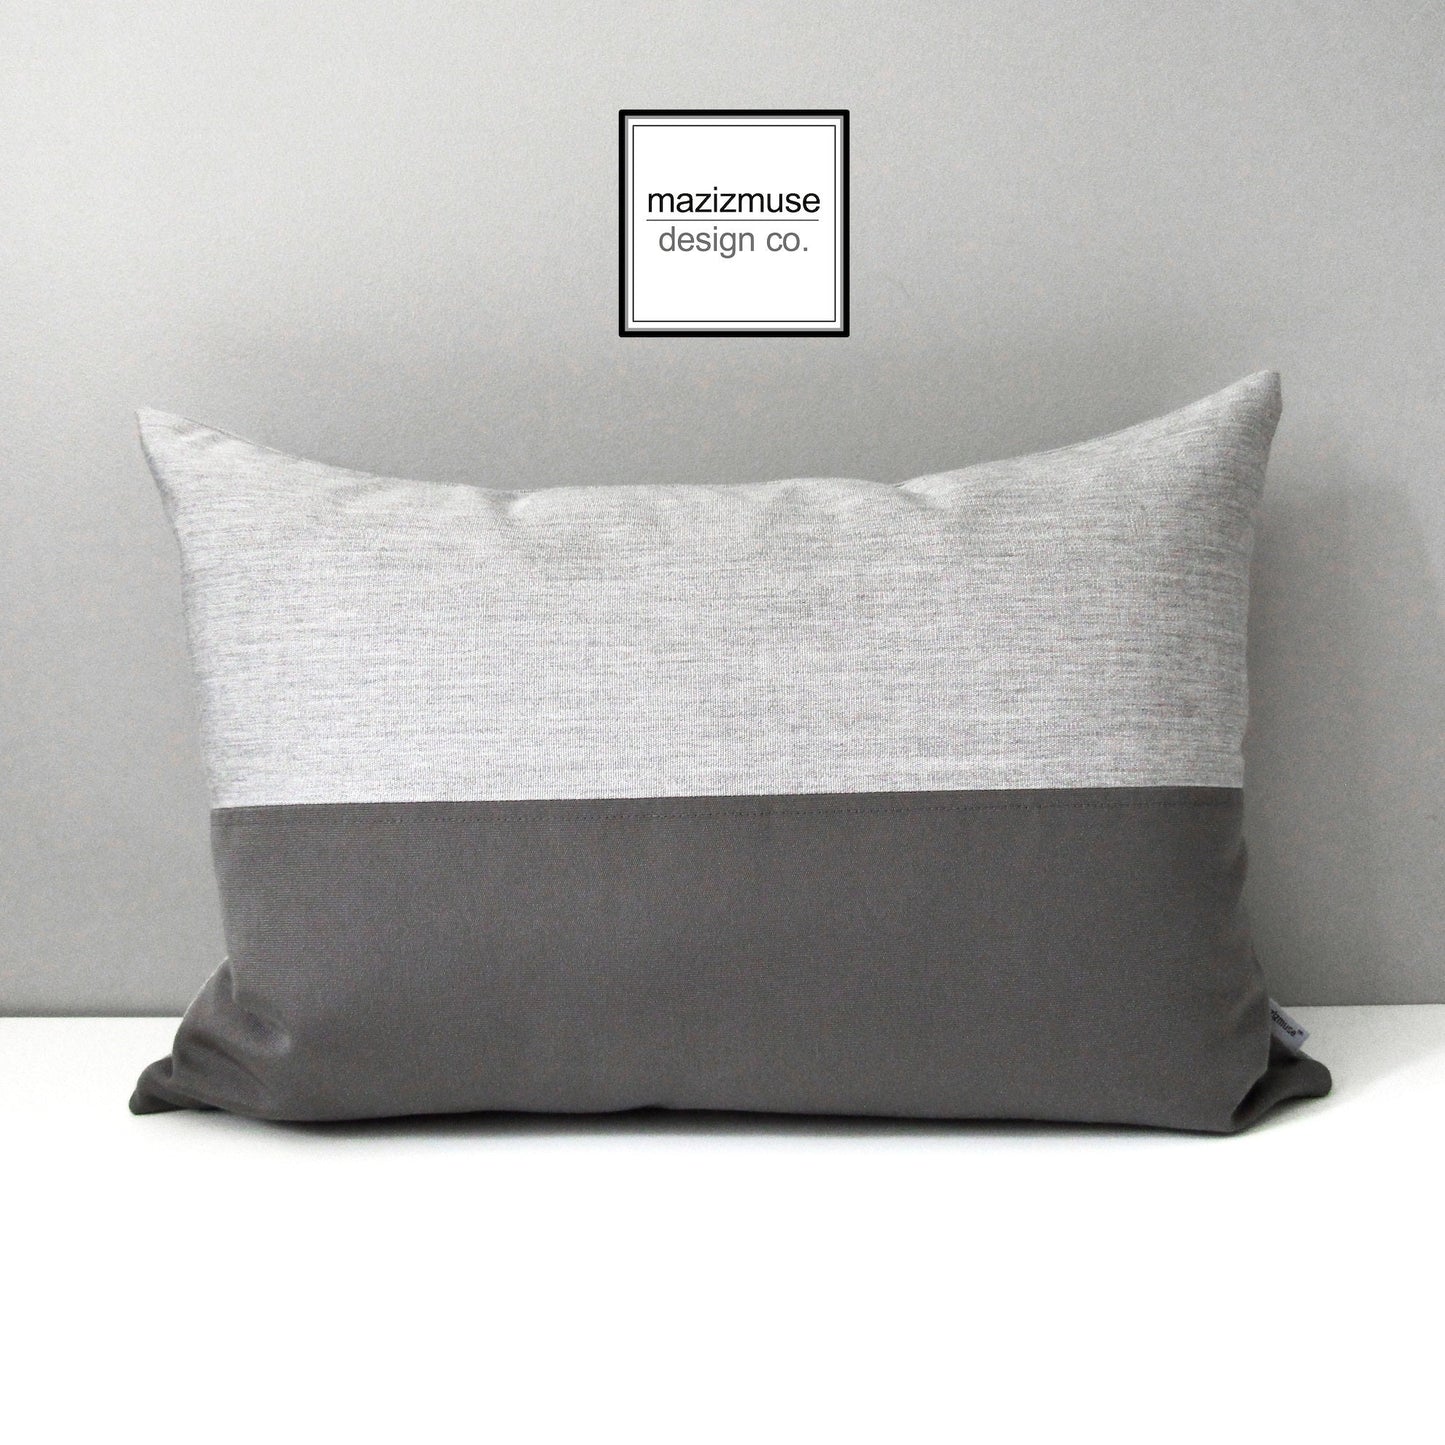 Black & White Sunbrella Outdoor Pillow Cover, Decorative Cushion Cover